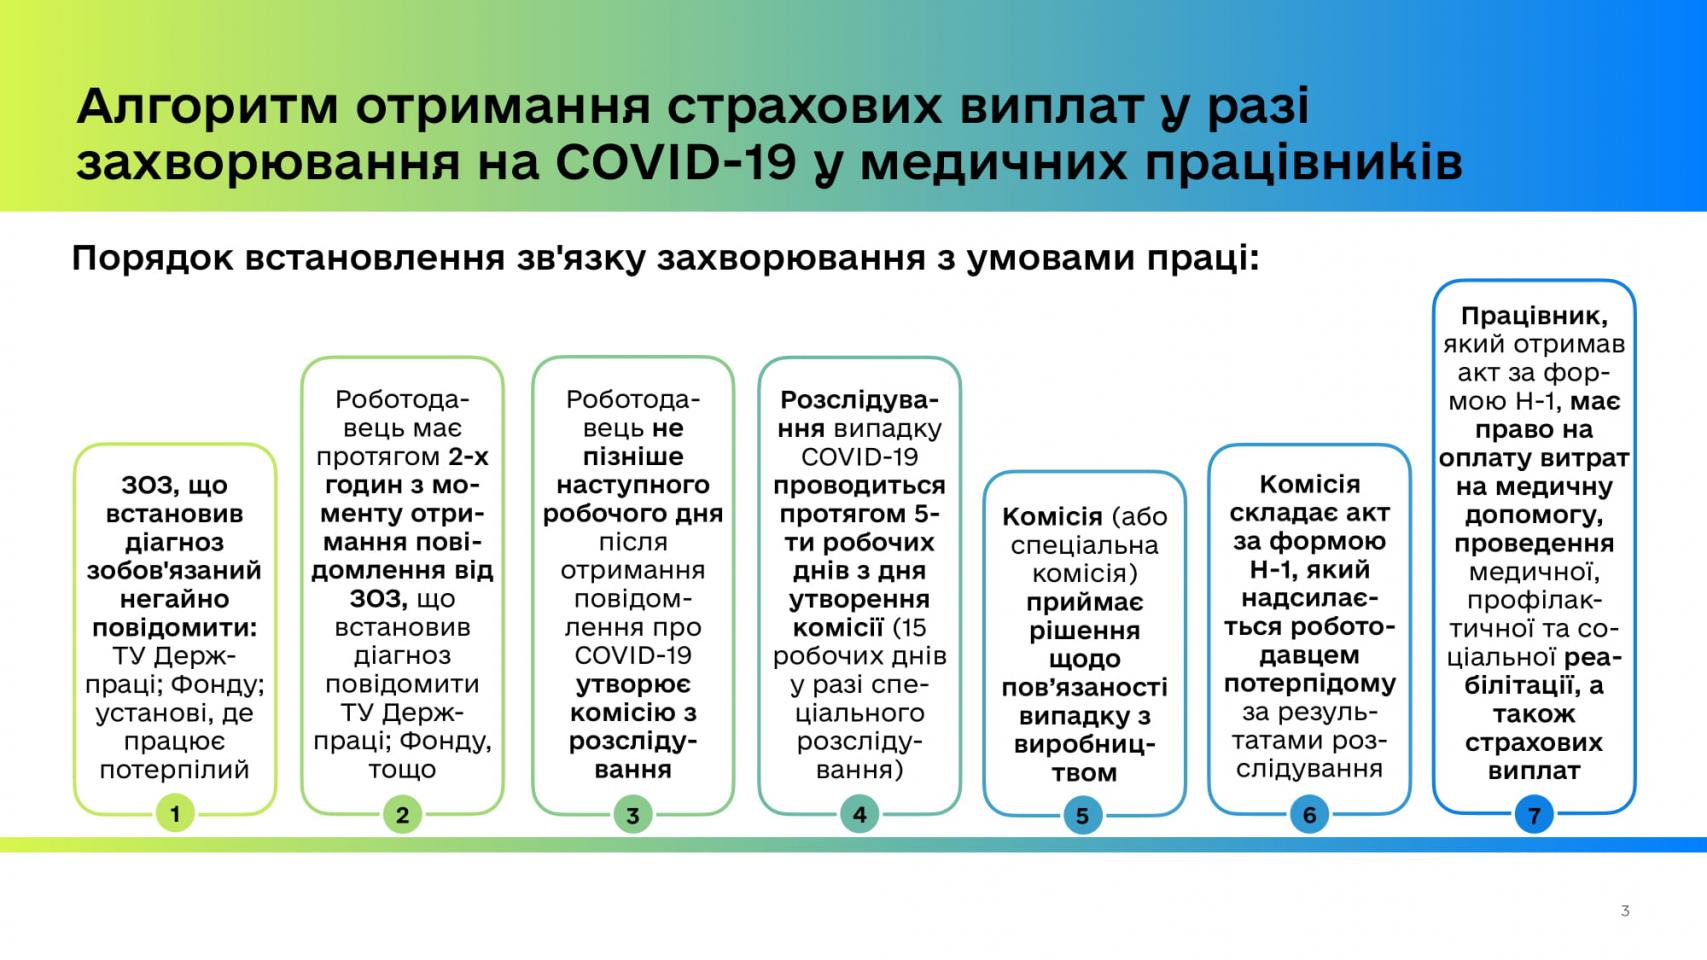 http://dunrada.gov.ua/uploadfile/archive_news/2020/04/28/2020-04-28_3910/images/images-92458.jpg